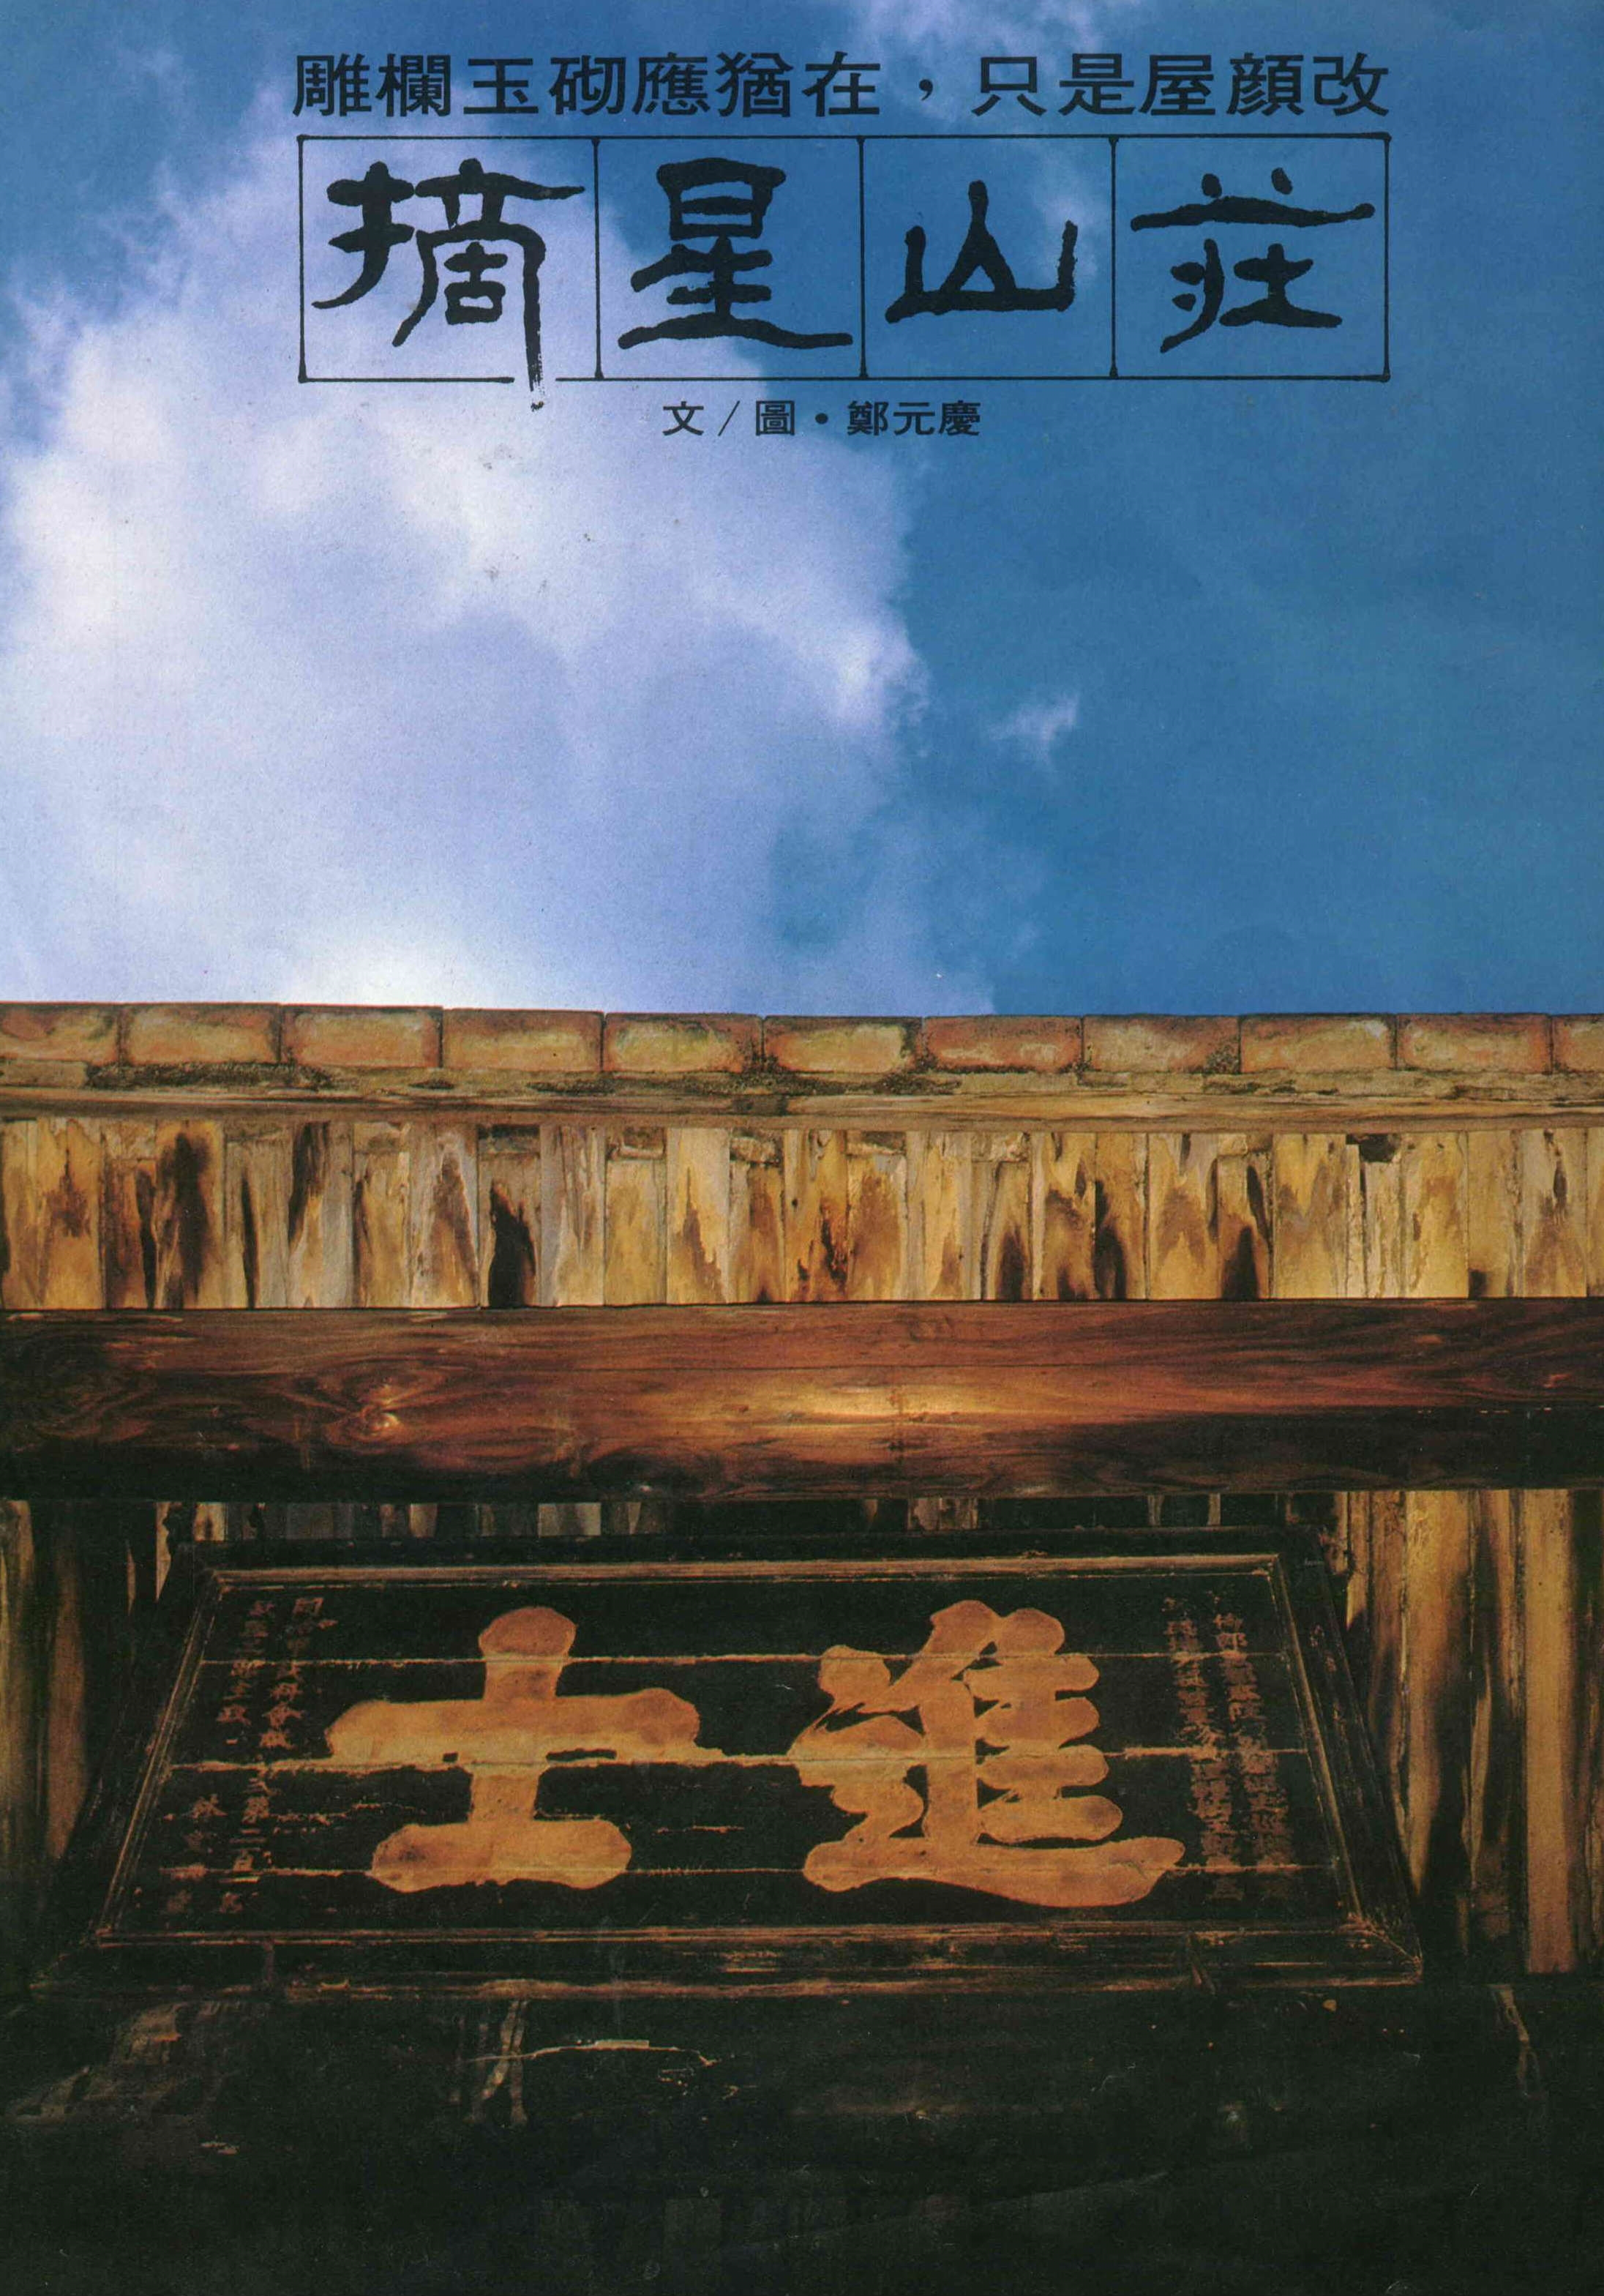 雕欄玉砌應猶在，只是屋顏改——摘星山莊- 台灣光華雜誌